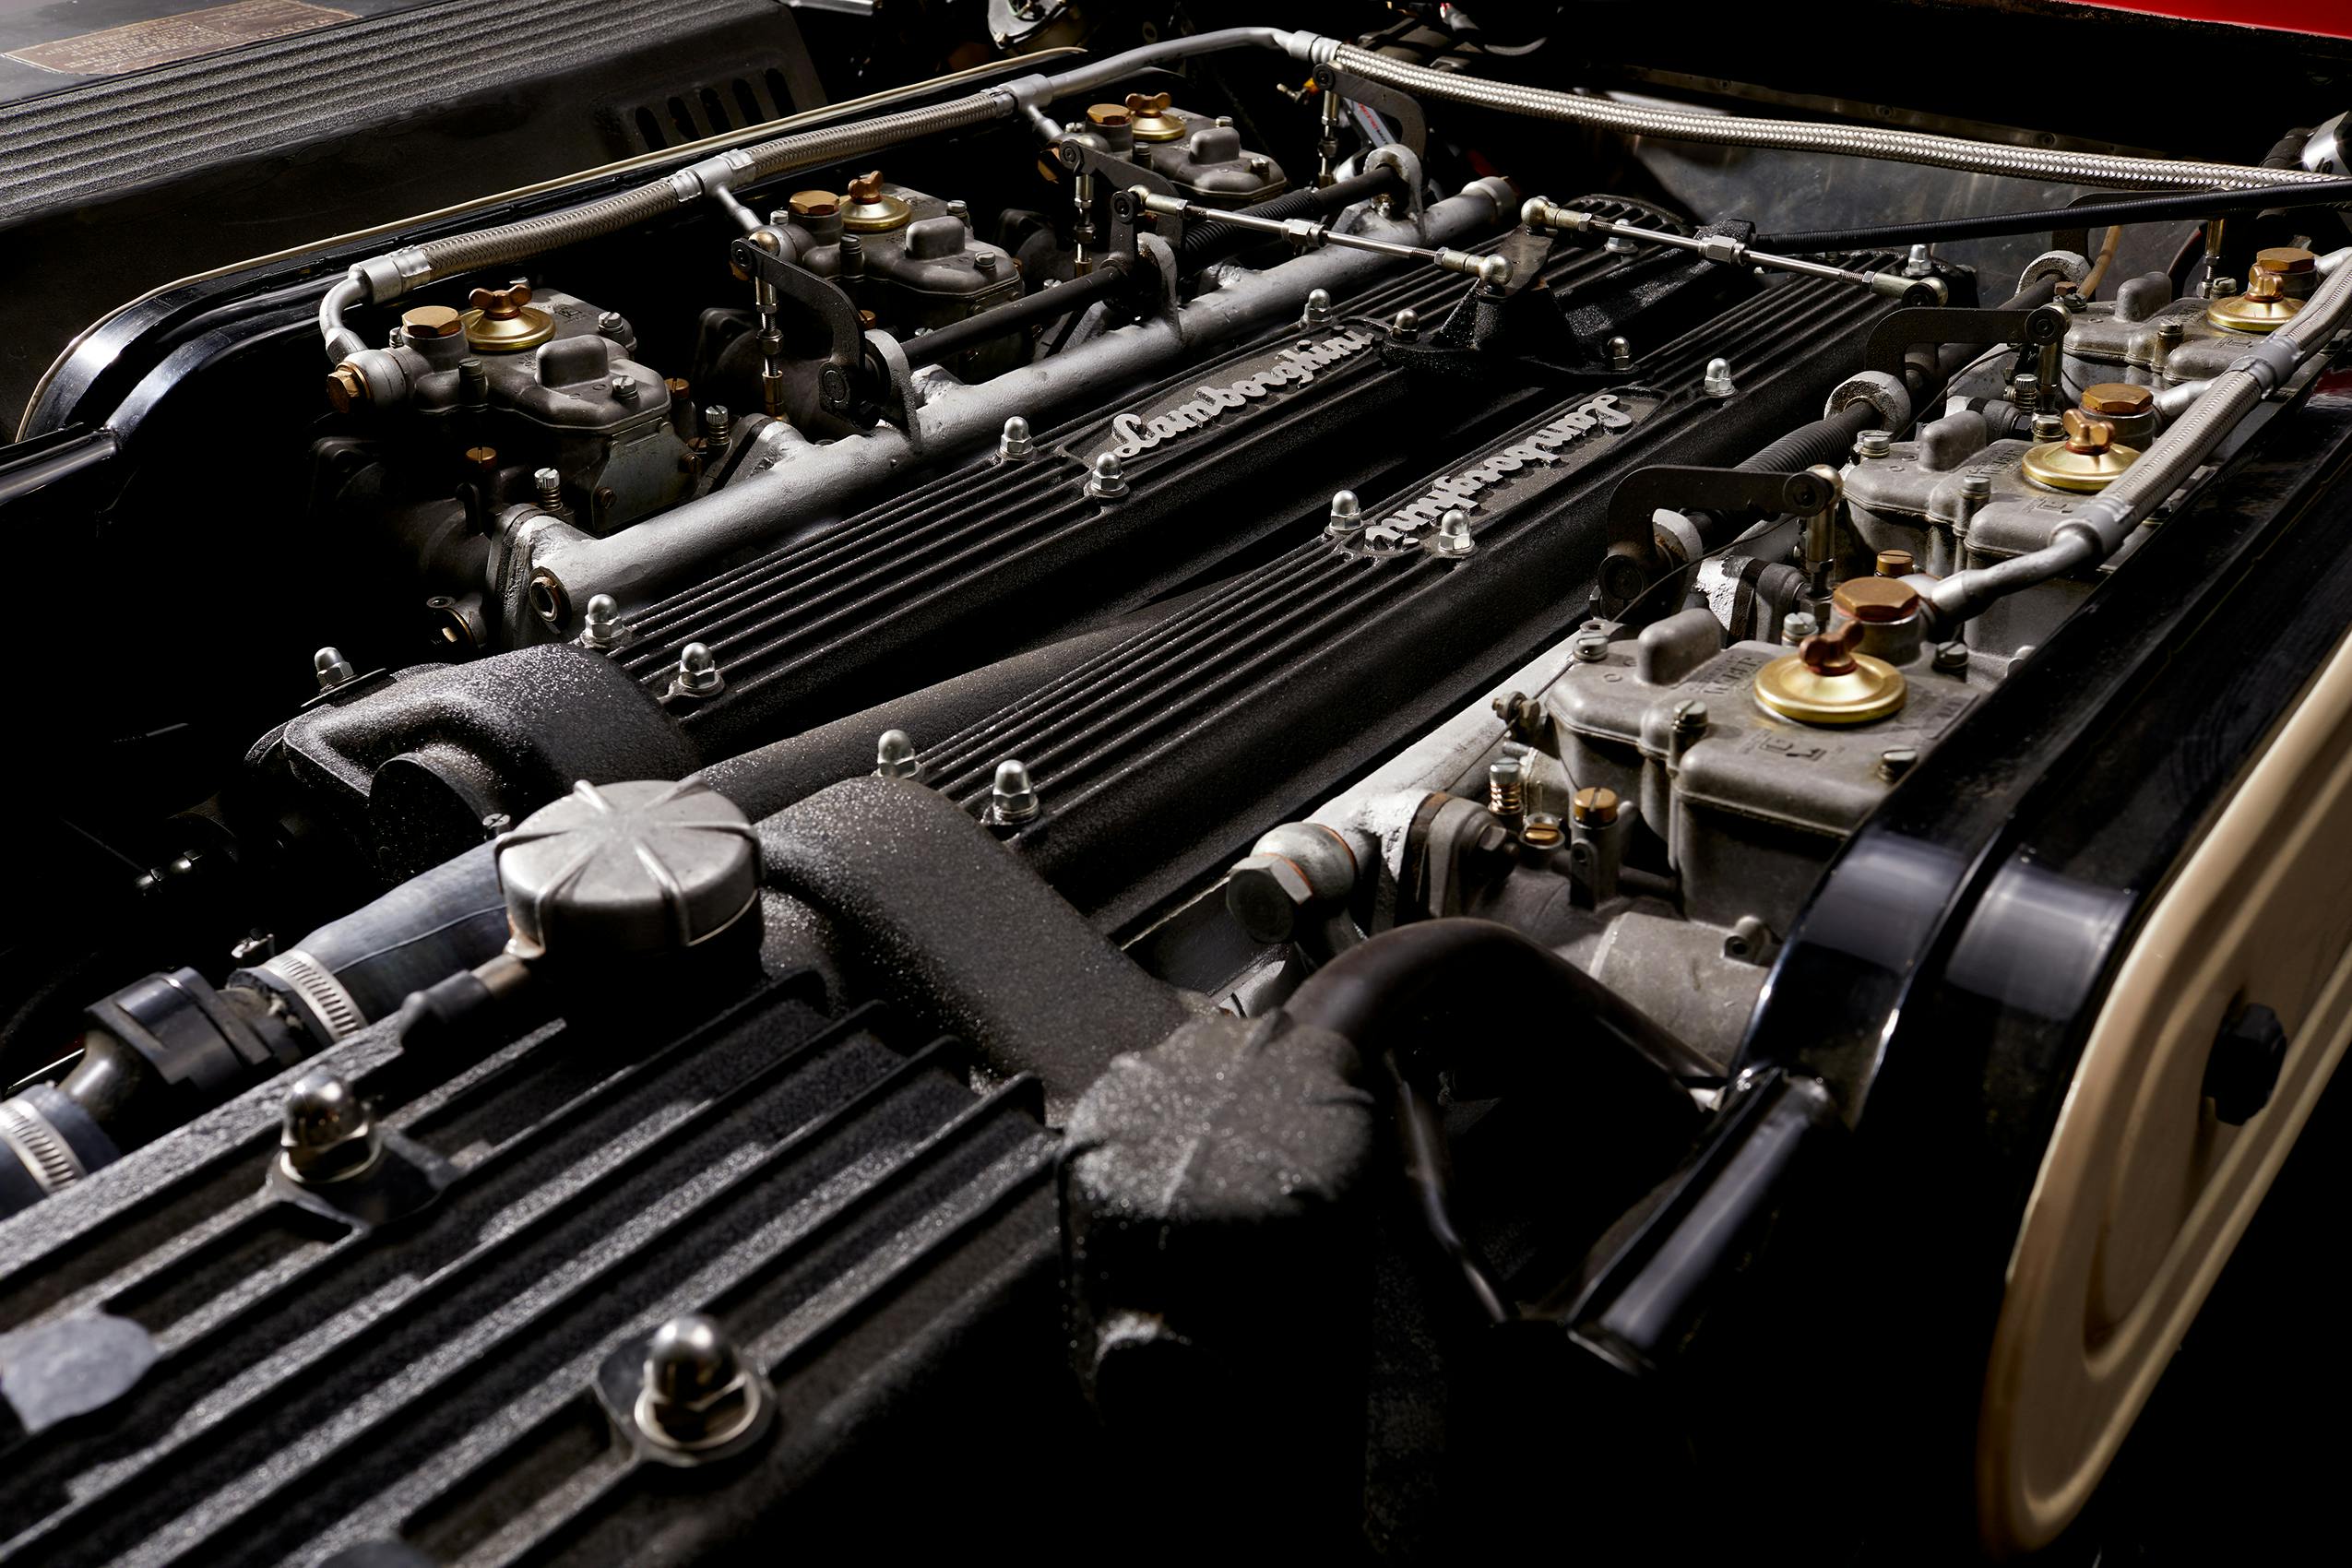 Ferruccio V12 Lamborghini Engine top detail